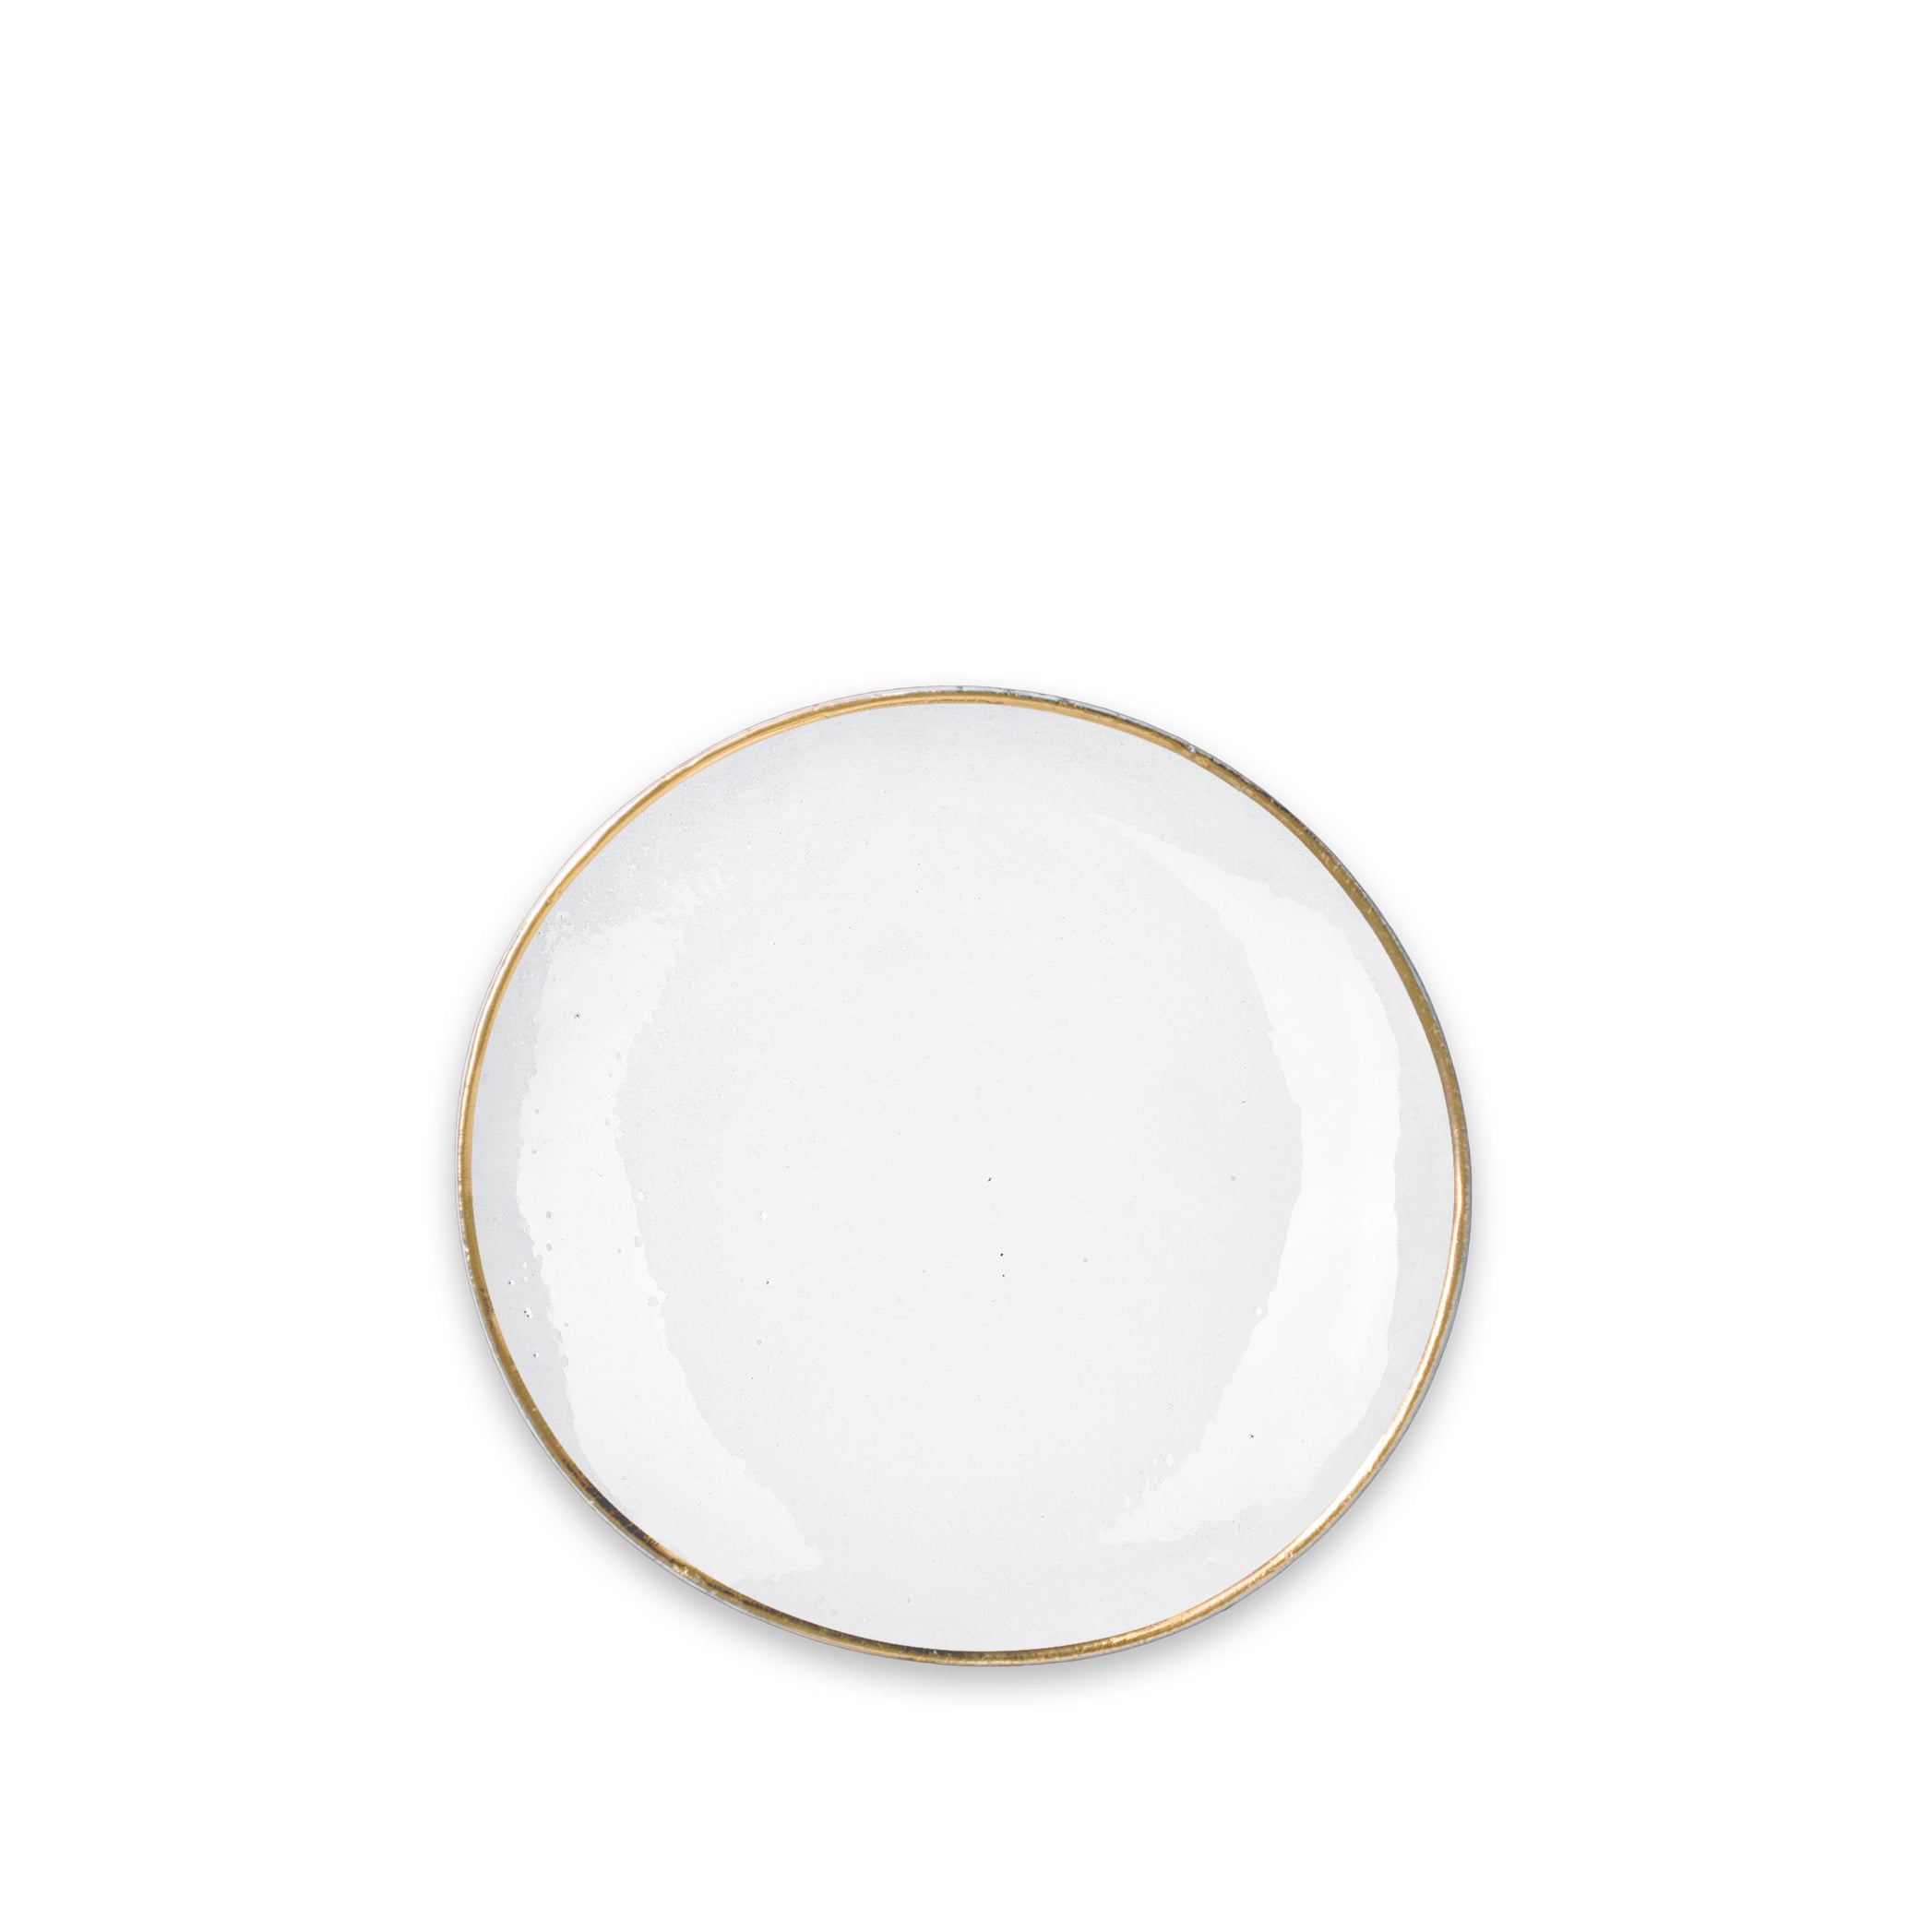 Crésus Dinner Plate with Gold Rim by Astier de Villatte, 26cm